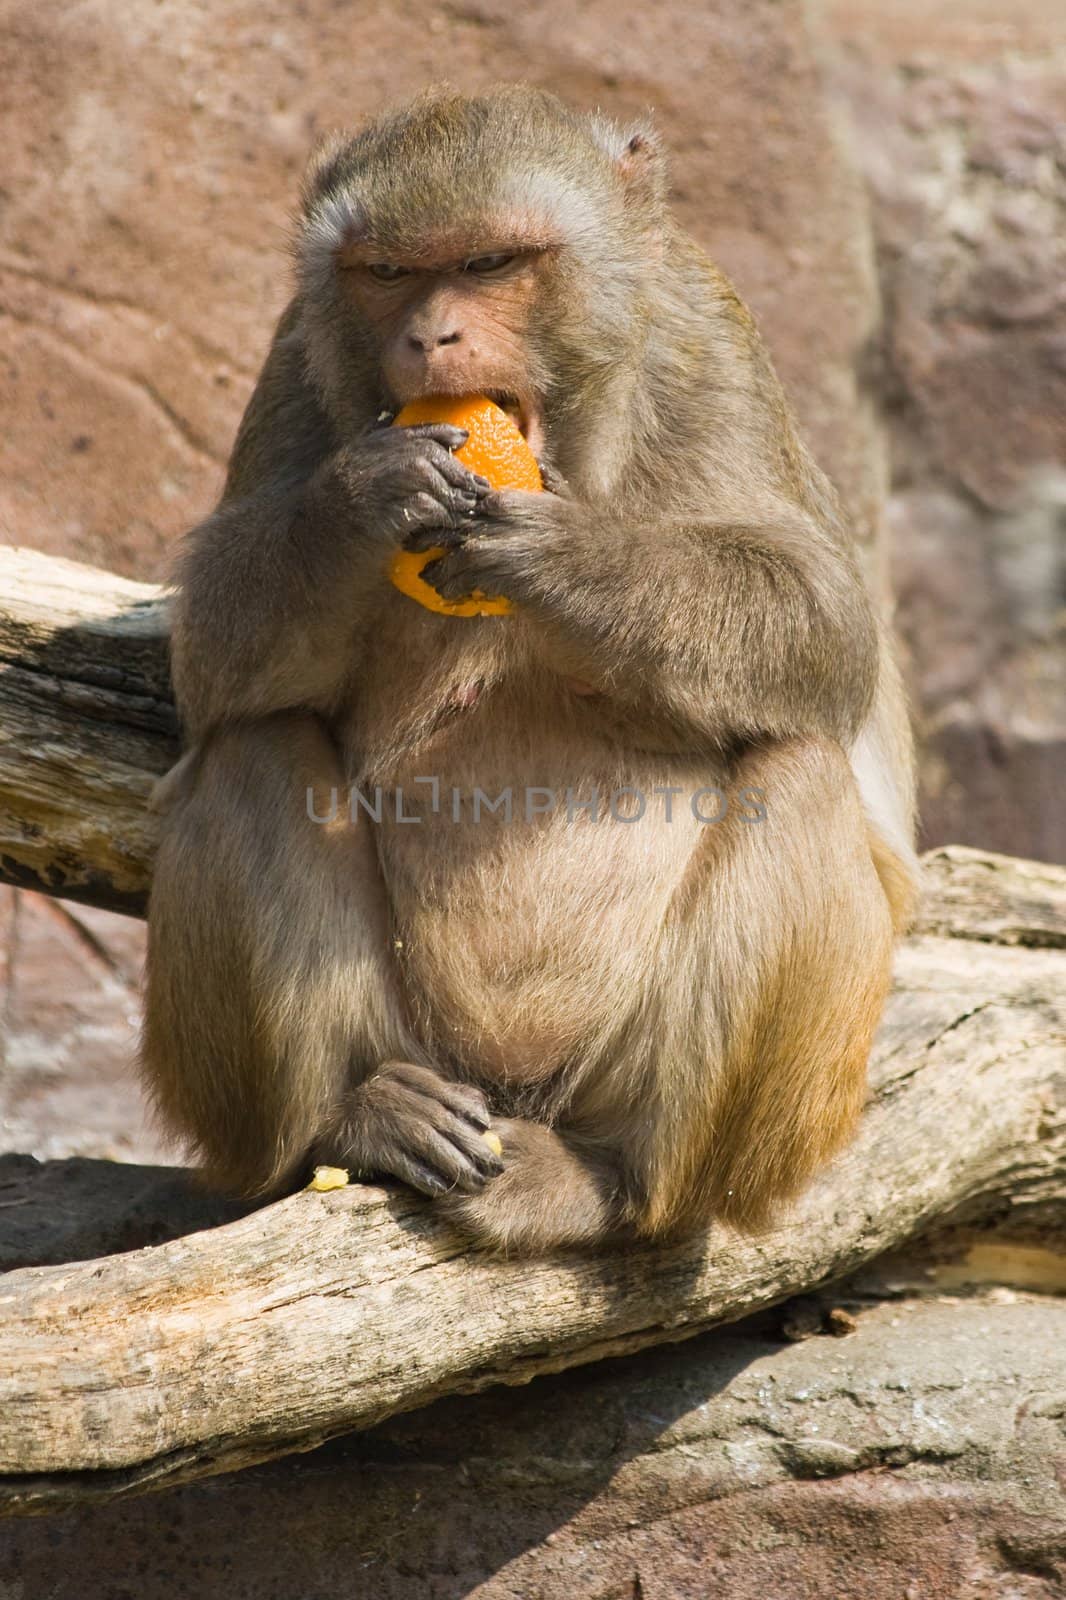 Rhesus monkey eating orange by Colette